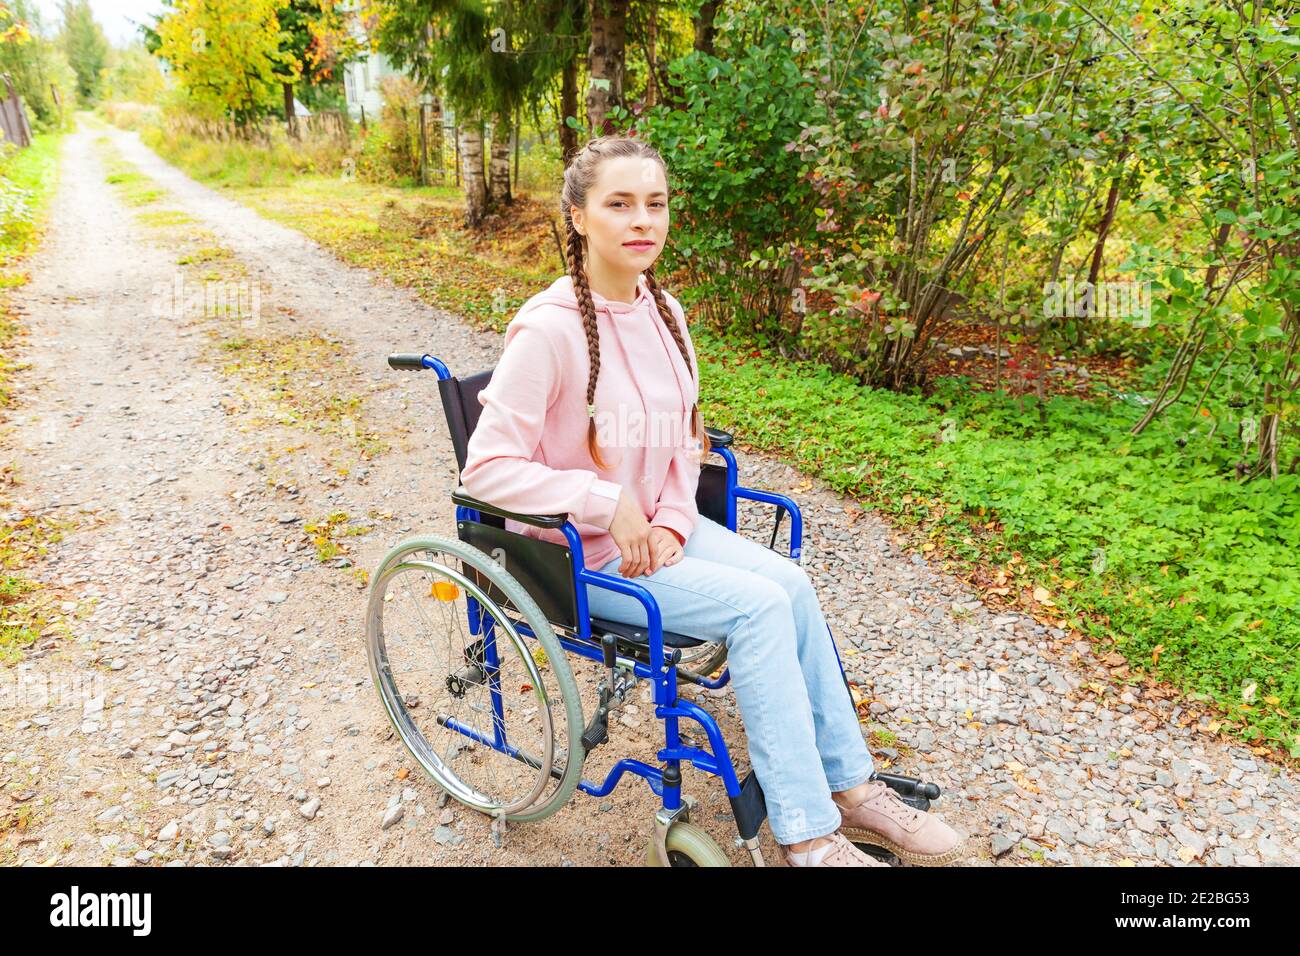 порно с инвалидом на коляске фото 73